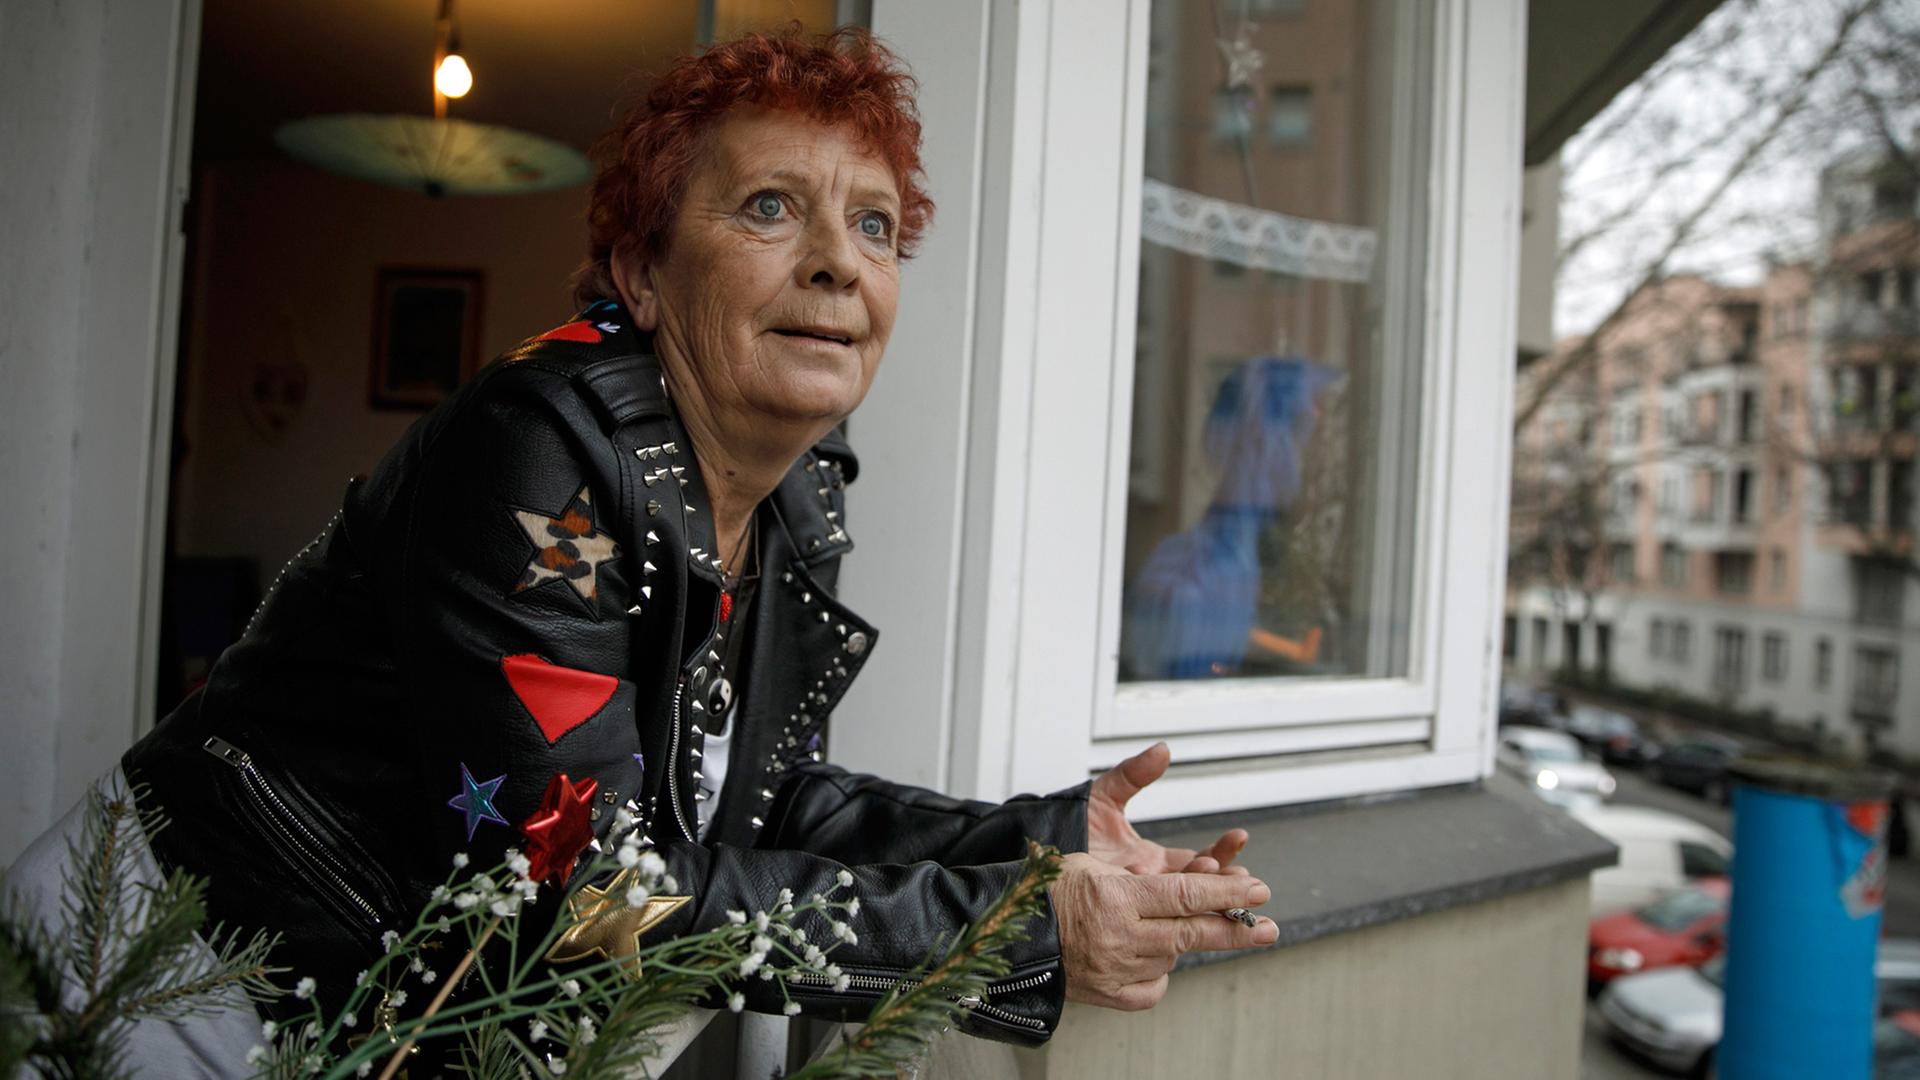 Die ehemals obdachlose Ingrid Bujnak steht auf dem Balkon ihrer neuen Wohnung im Stadtteil Schöneberg. Seit kurzer Zeit lebt sie in einer Wohnung, die ihr von dem Berliner Pilotprojekt "Housing First" vermittelt wurde.